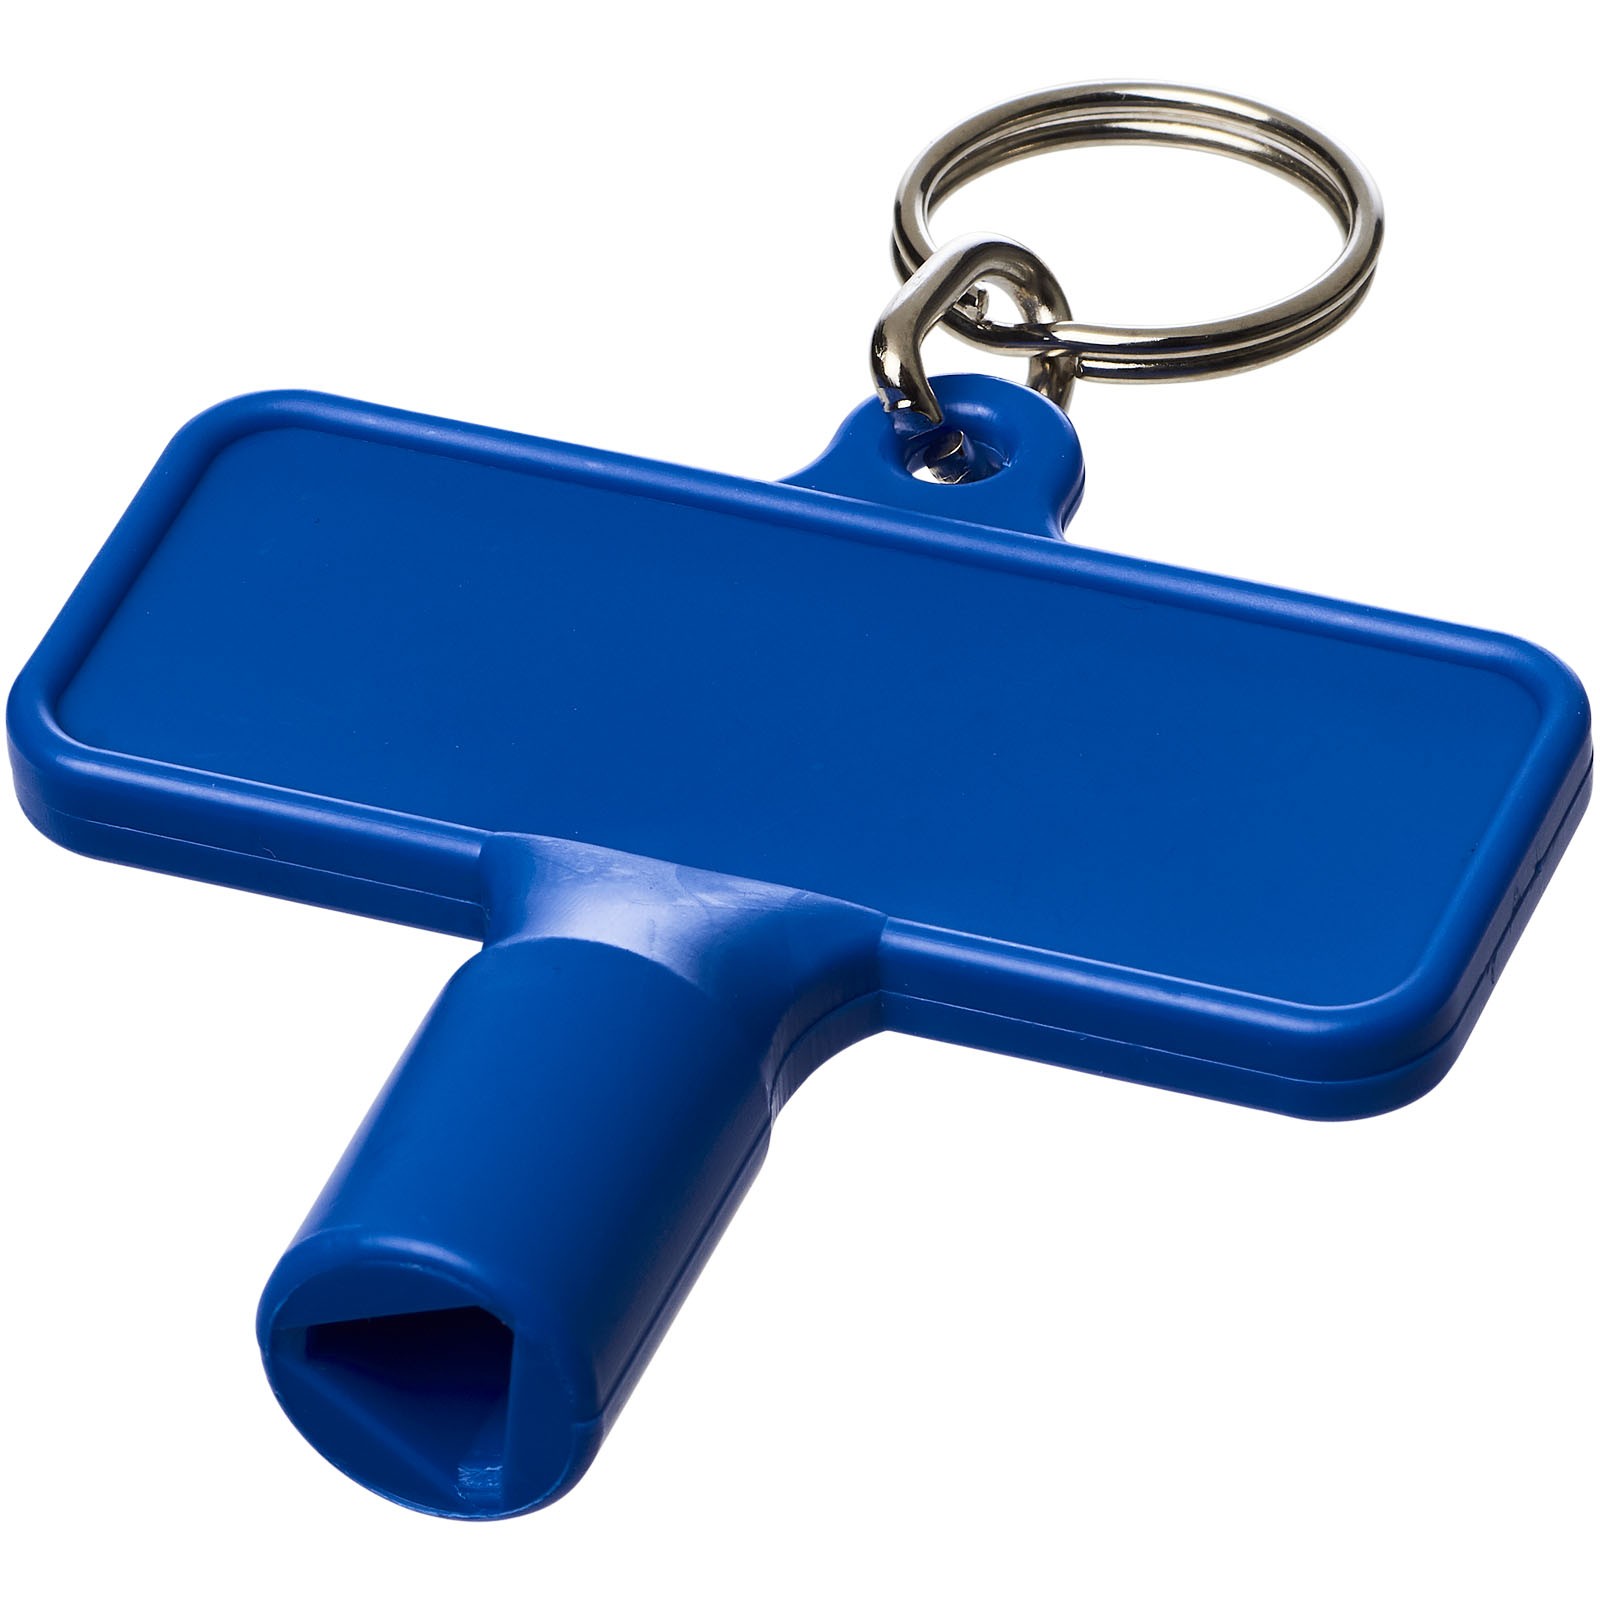 Maximilian obdélníkový montážní klíč s klíčenkou - Modrá